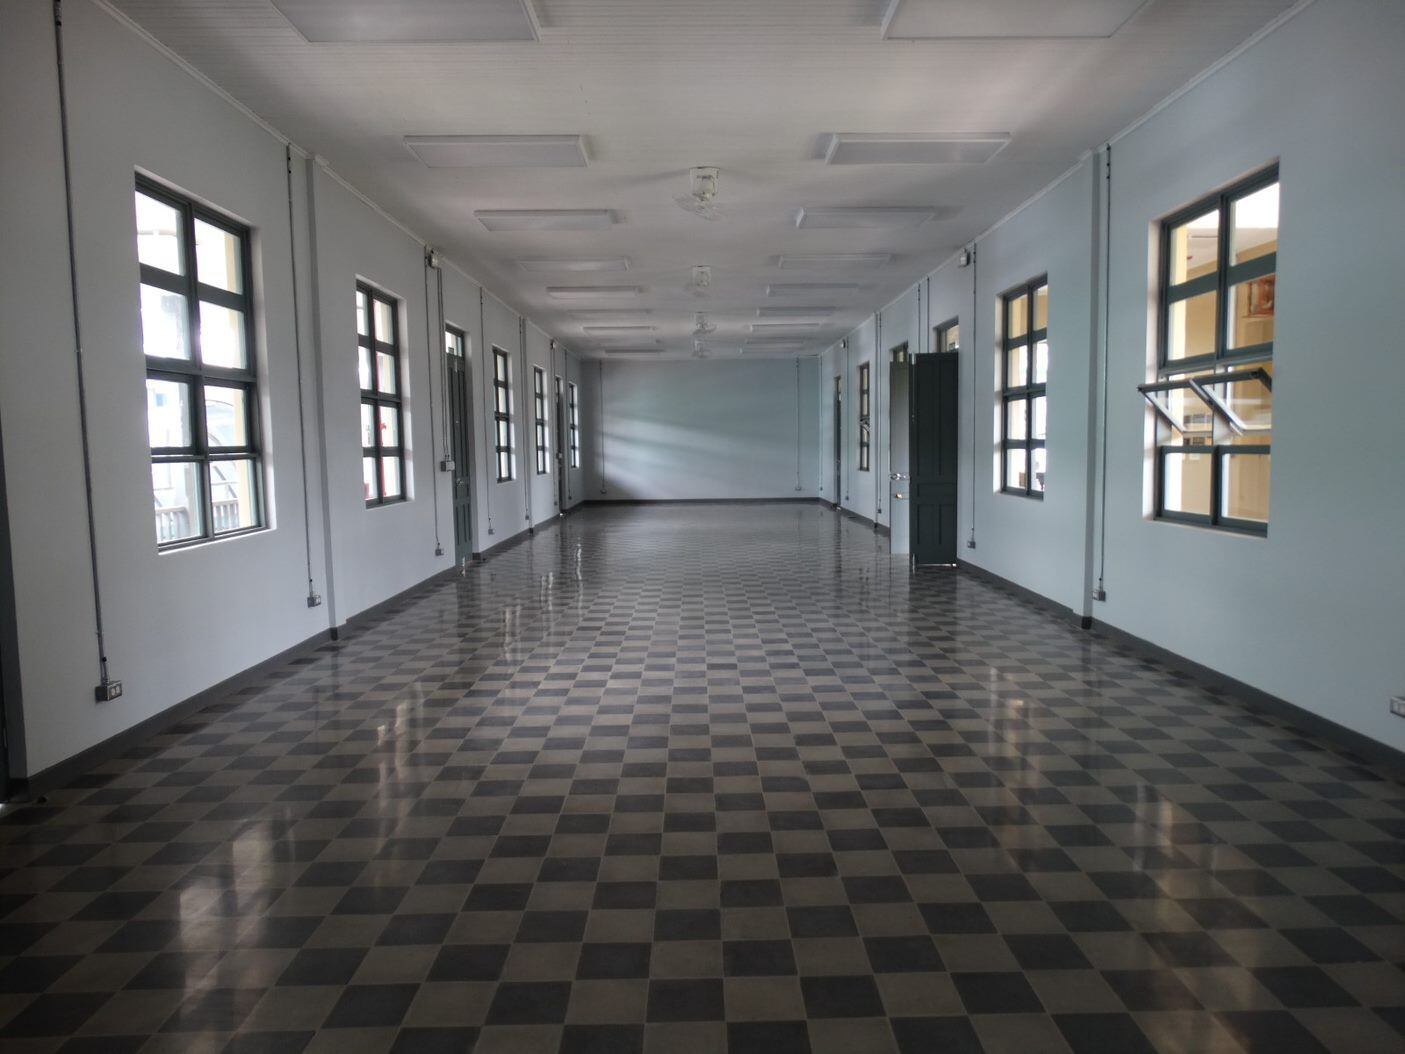 Este era el antiguo salón de actos de la escuela. Ahora será una sala de reuniones.

Fotografía: Centro de Patrimonio